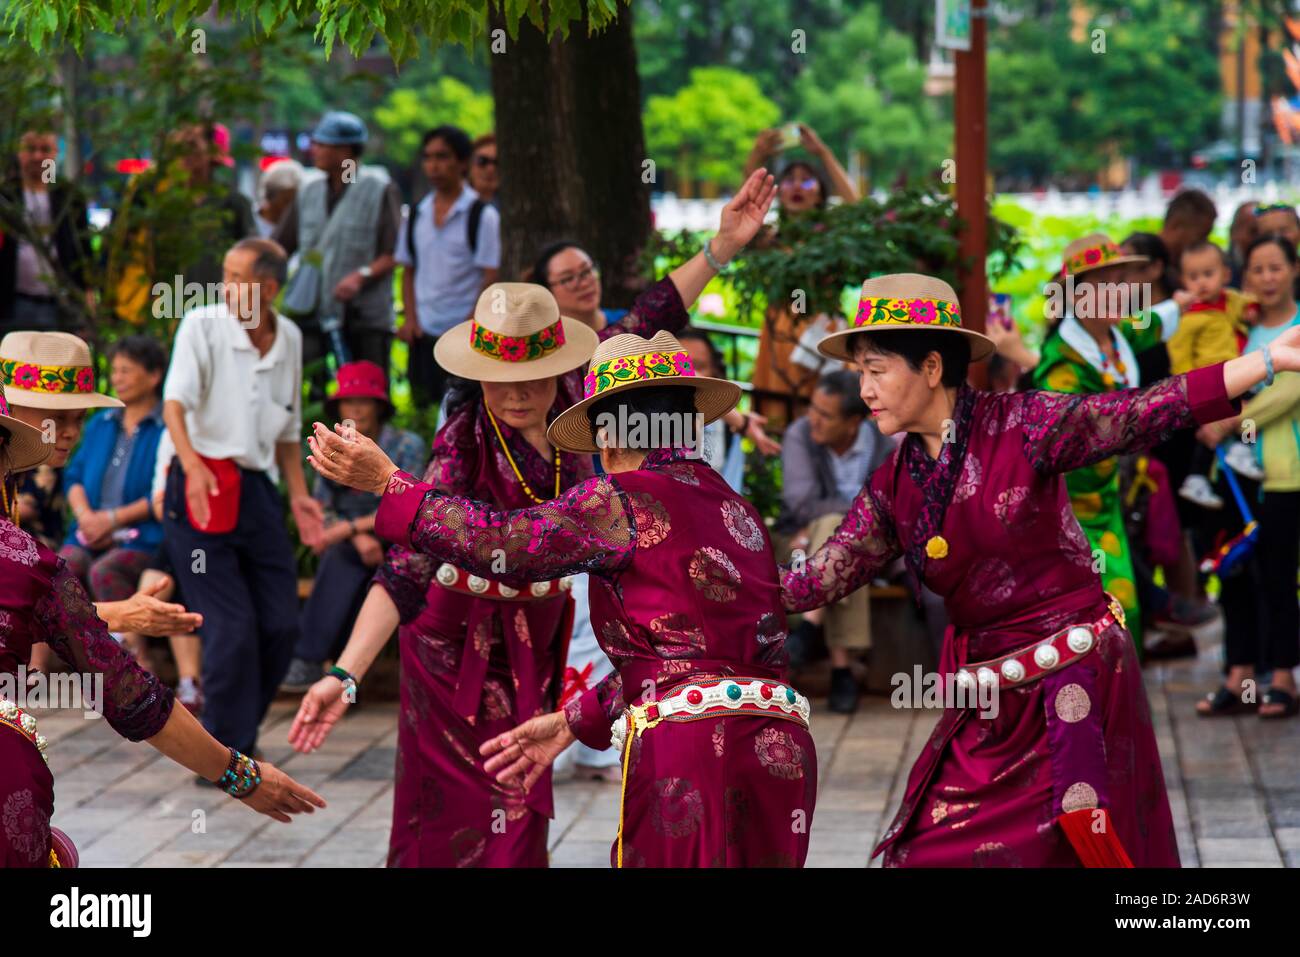 Kunming, Chine - 12 juillet 2019 : Chinois les gens danser sur la place publique dans le parc portant des vêtements de minorités ethniques dans la région de Kunming, Yunnan province Banque D'Images